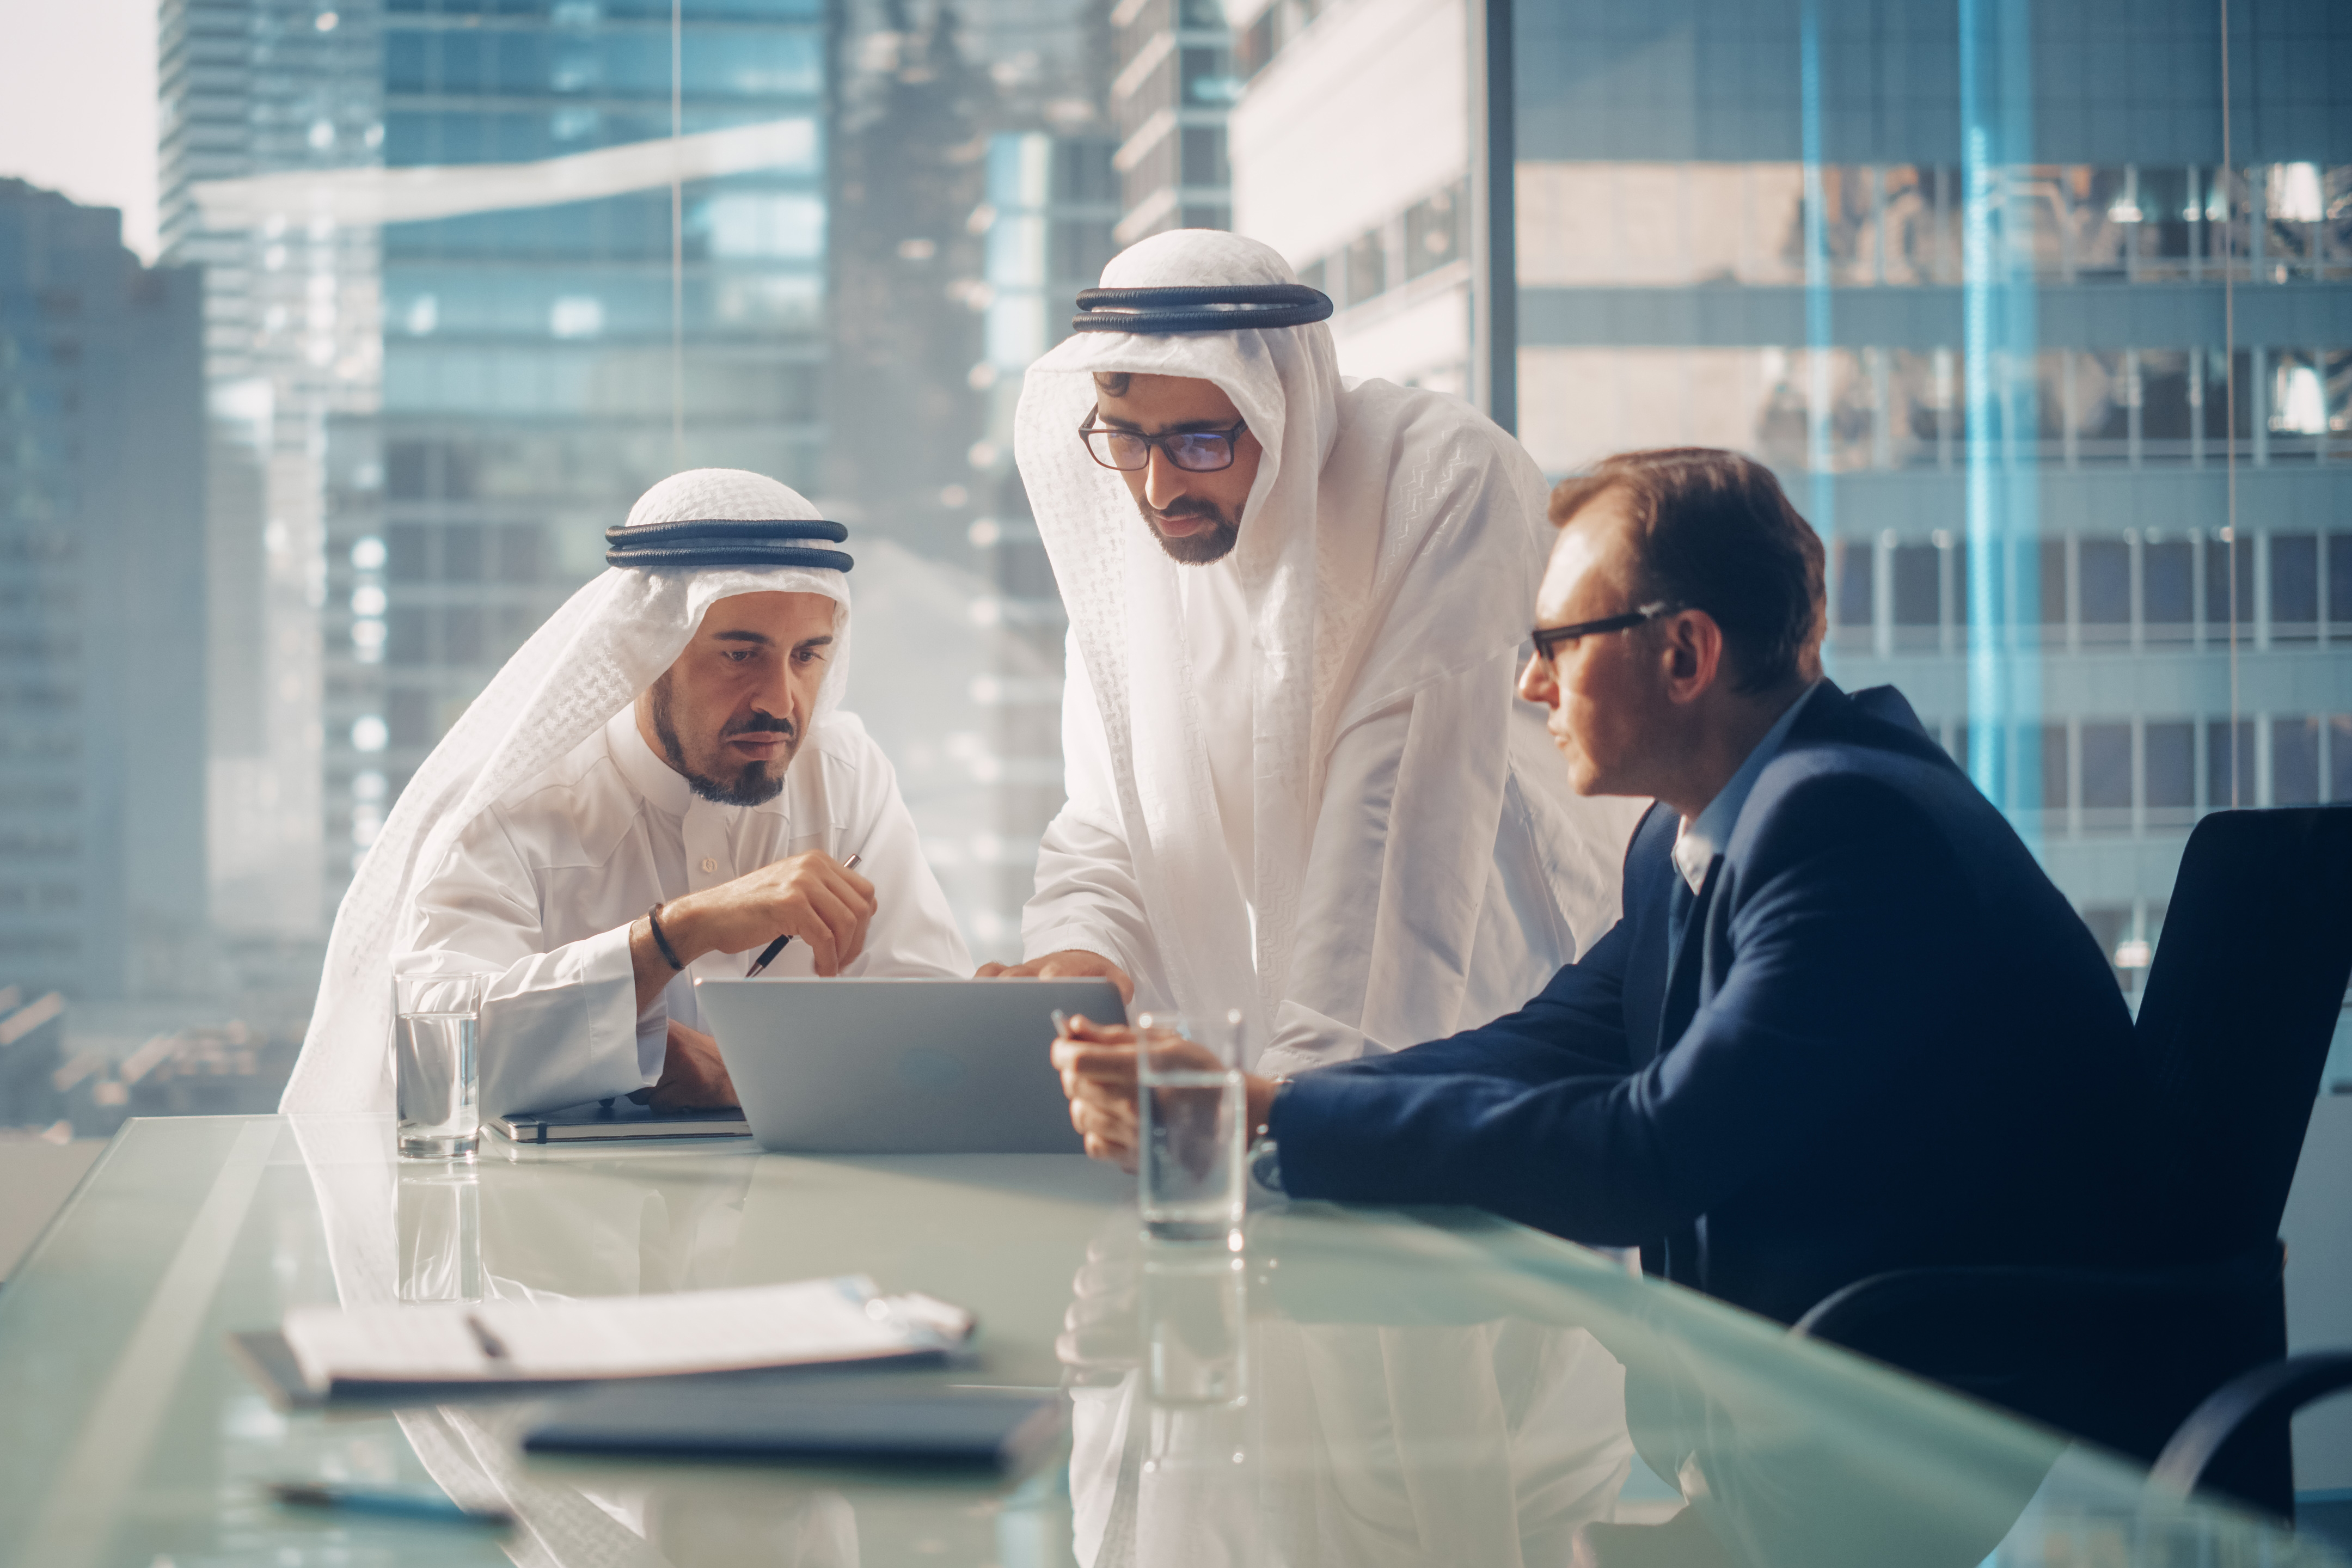 UAE trust fund participants